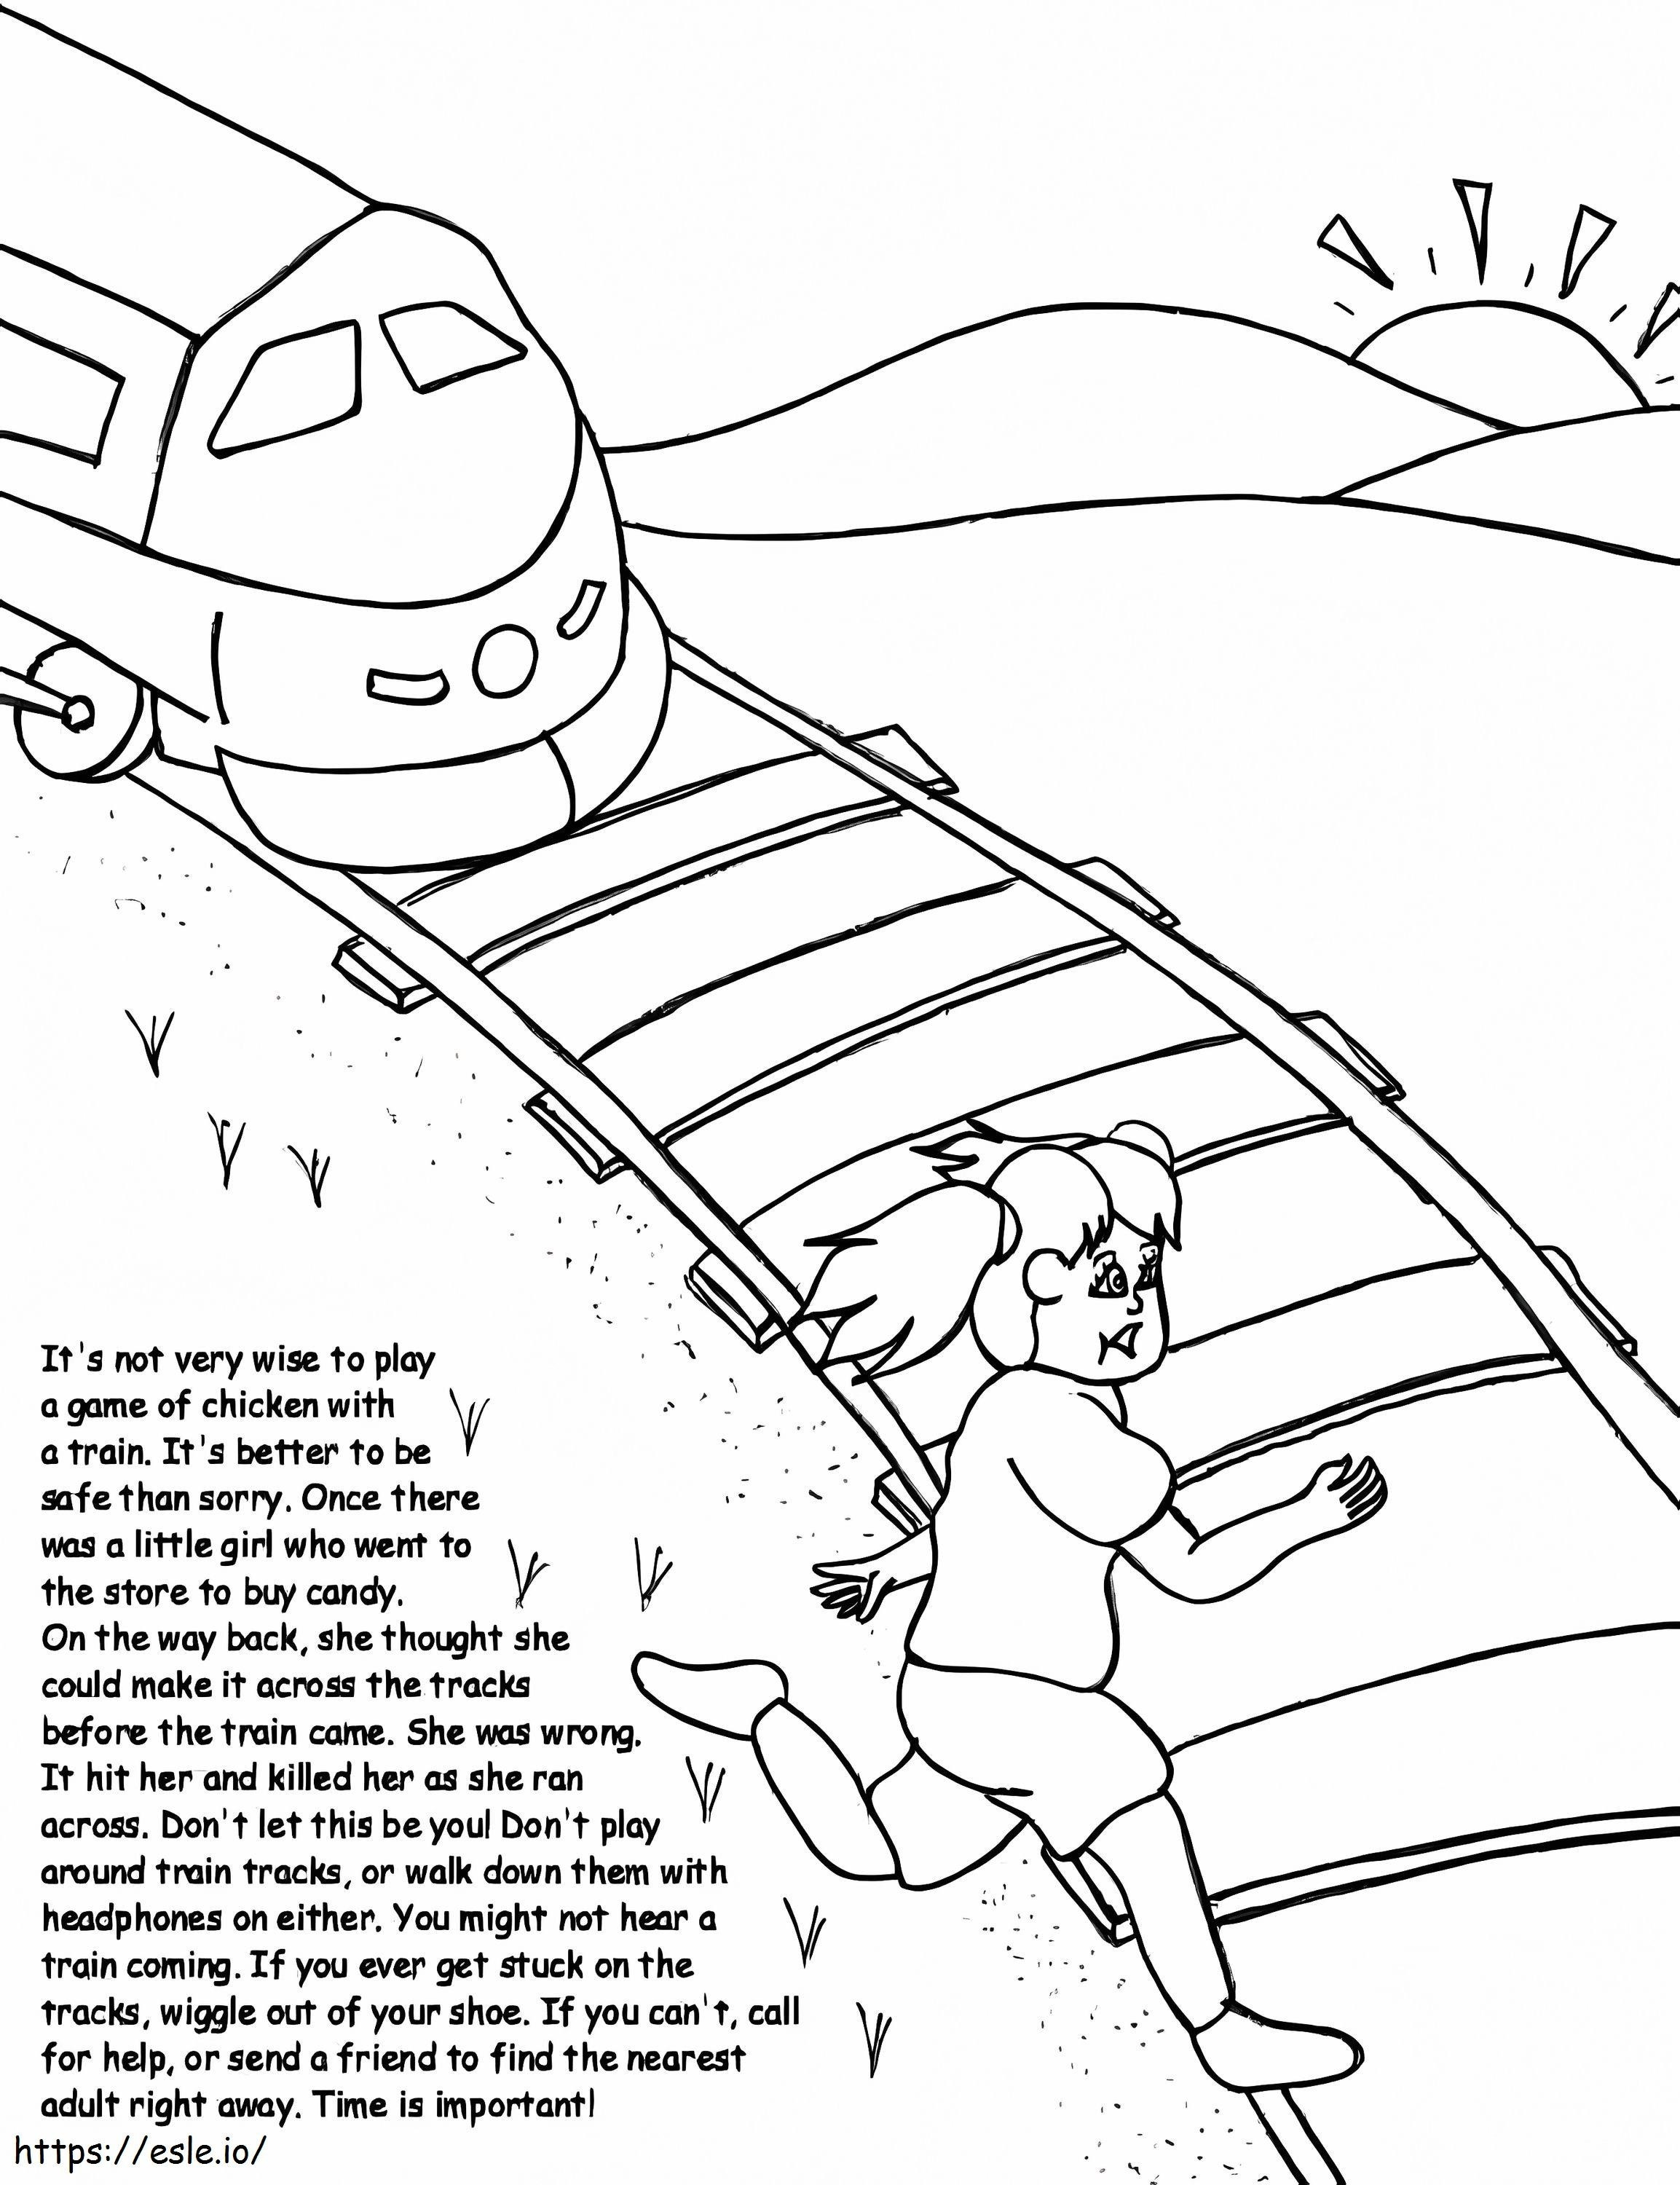 Siguranța trenurilor de colorat